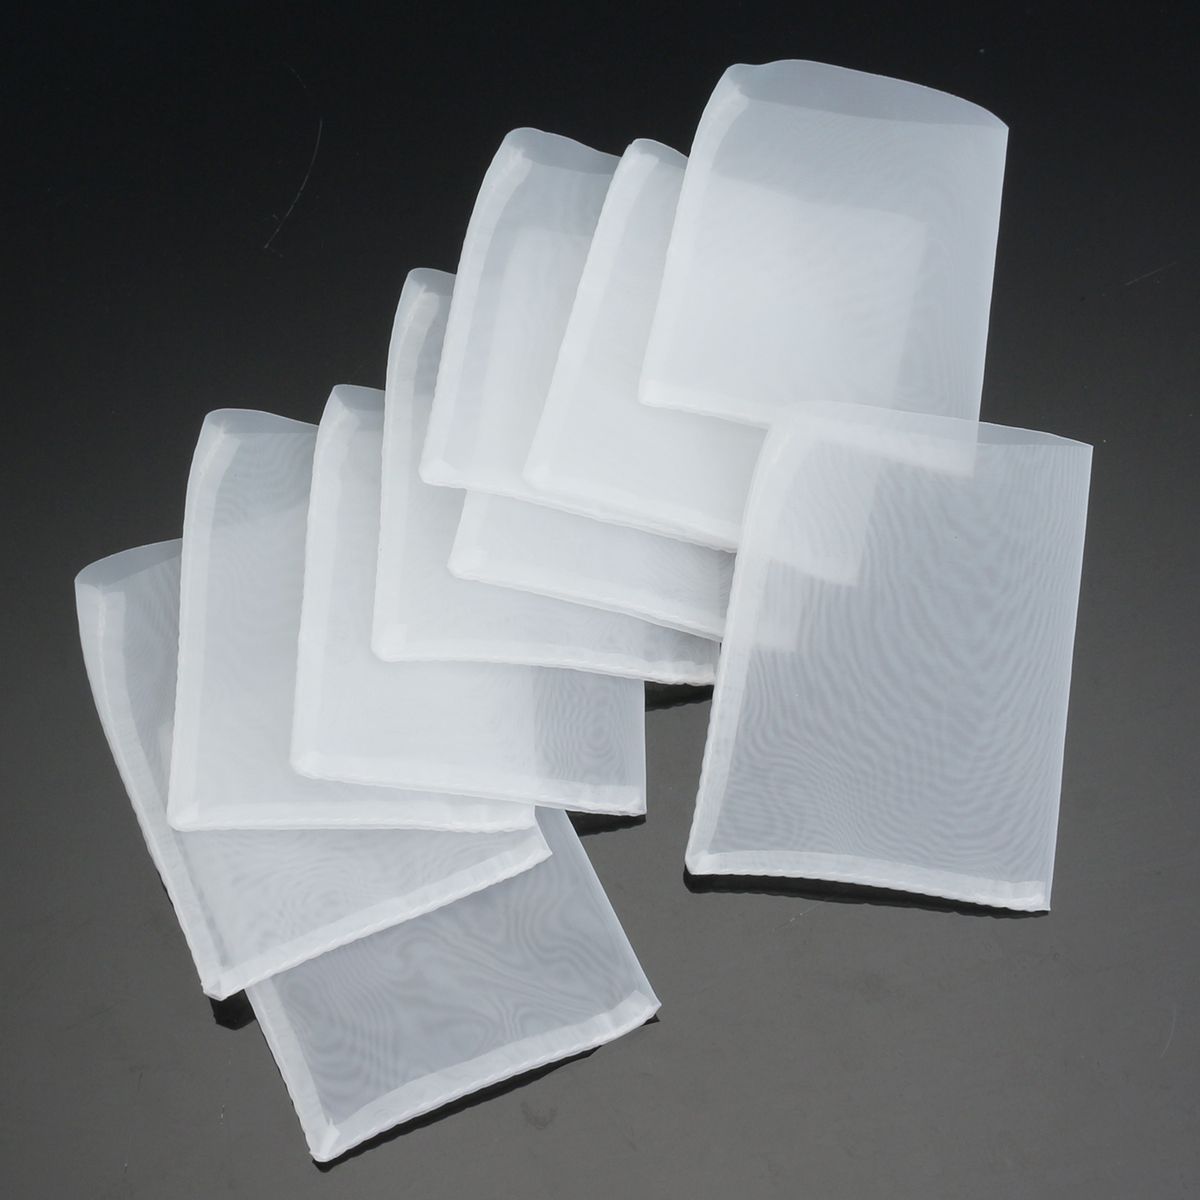 10Pcs-25x325-inch-90-Micron-Rosin-Nylon-Screen-Bags-Heat-Press-Rosin-Filter-Bags-1262332